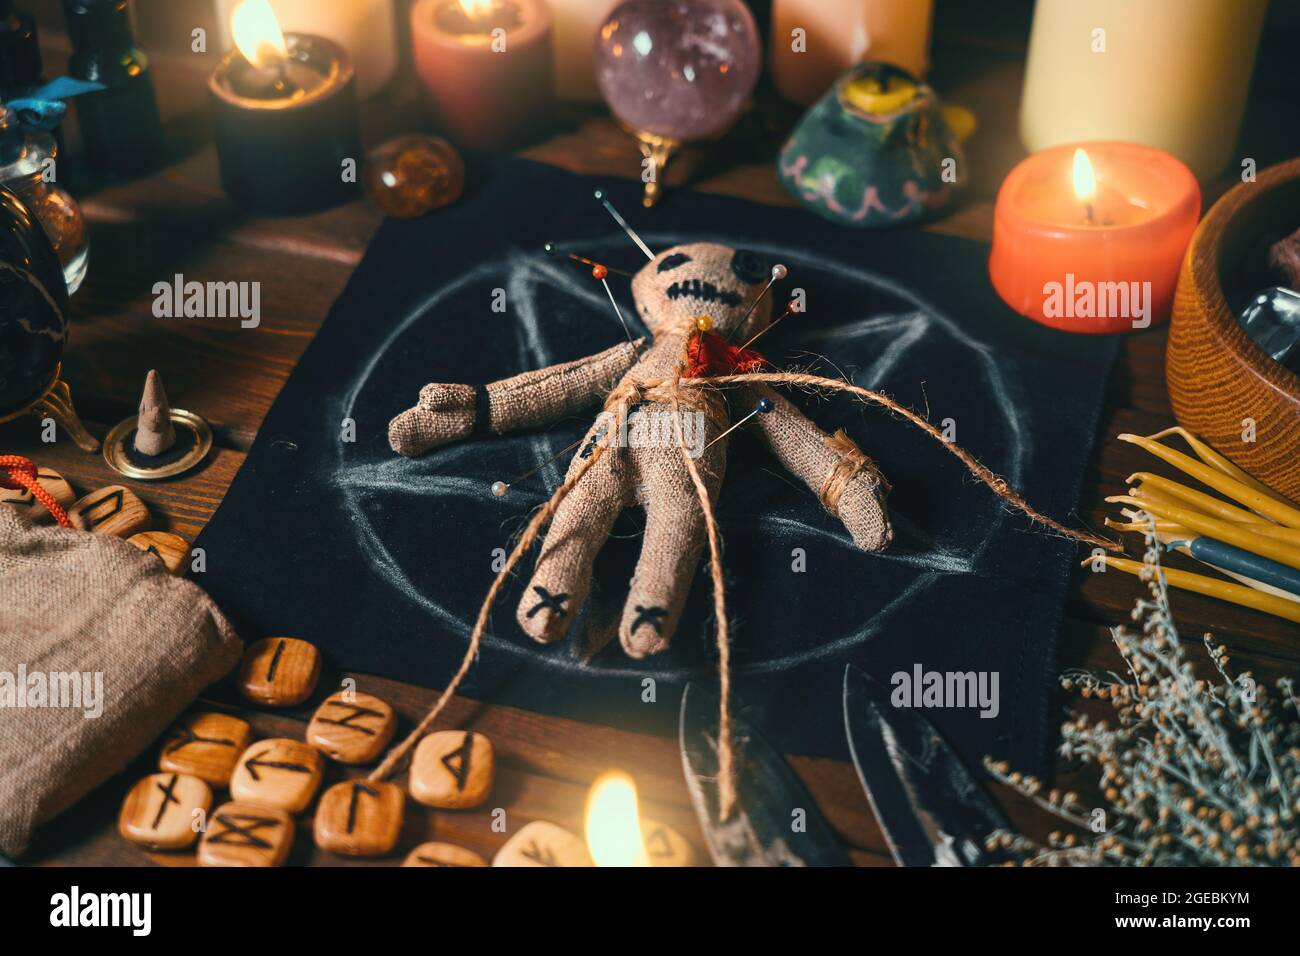 Voodoo bambola chiodata con aghi con cuore di straccio rosso traforato sul pentagramma e intorno a candele brucianti. Spooky o inquietante rituale esoterico magico. Foto Stock